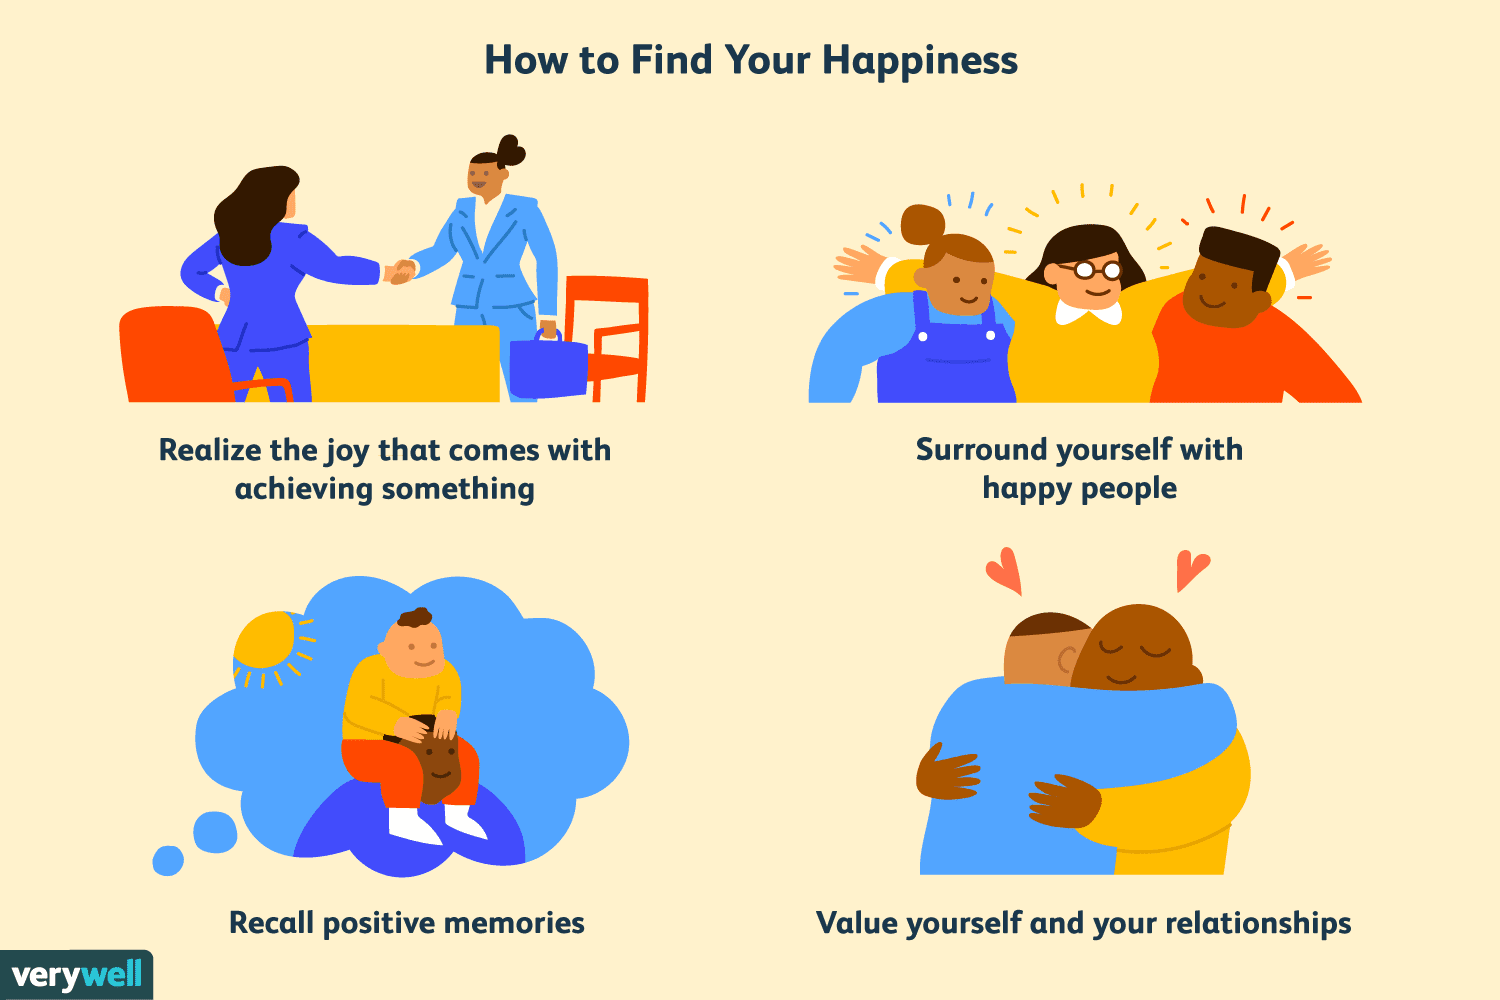 ¿Cómo puedes organizarte un día entero de felicidad?